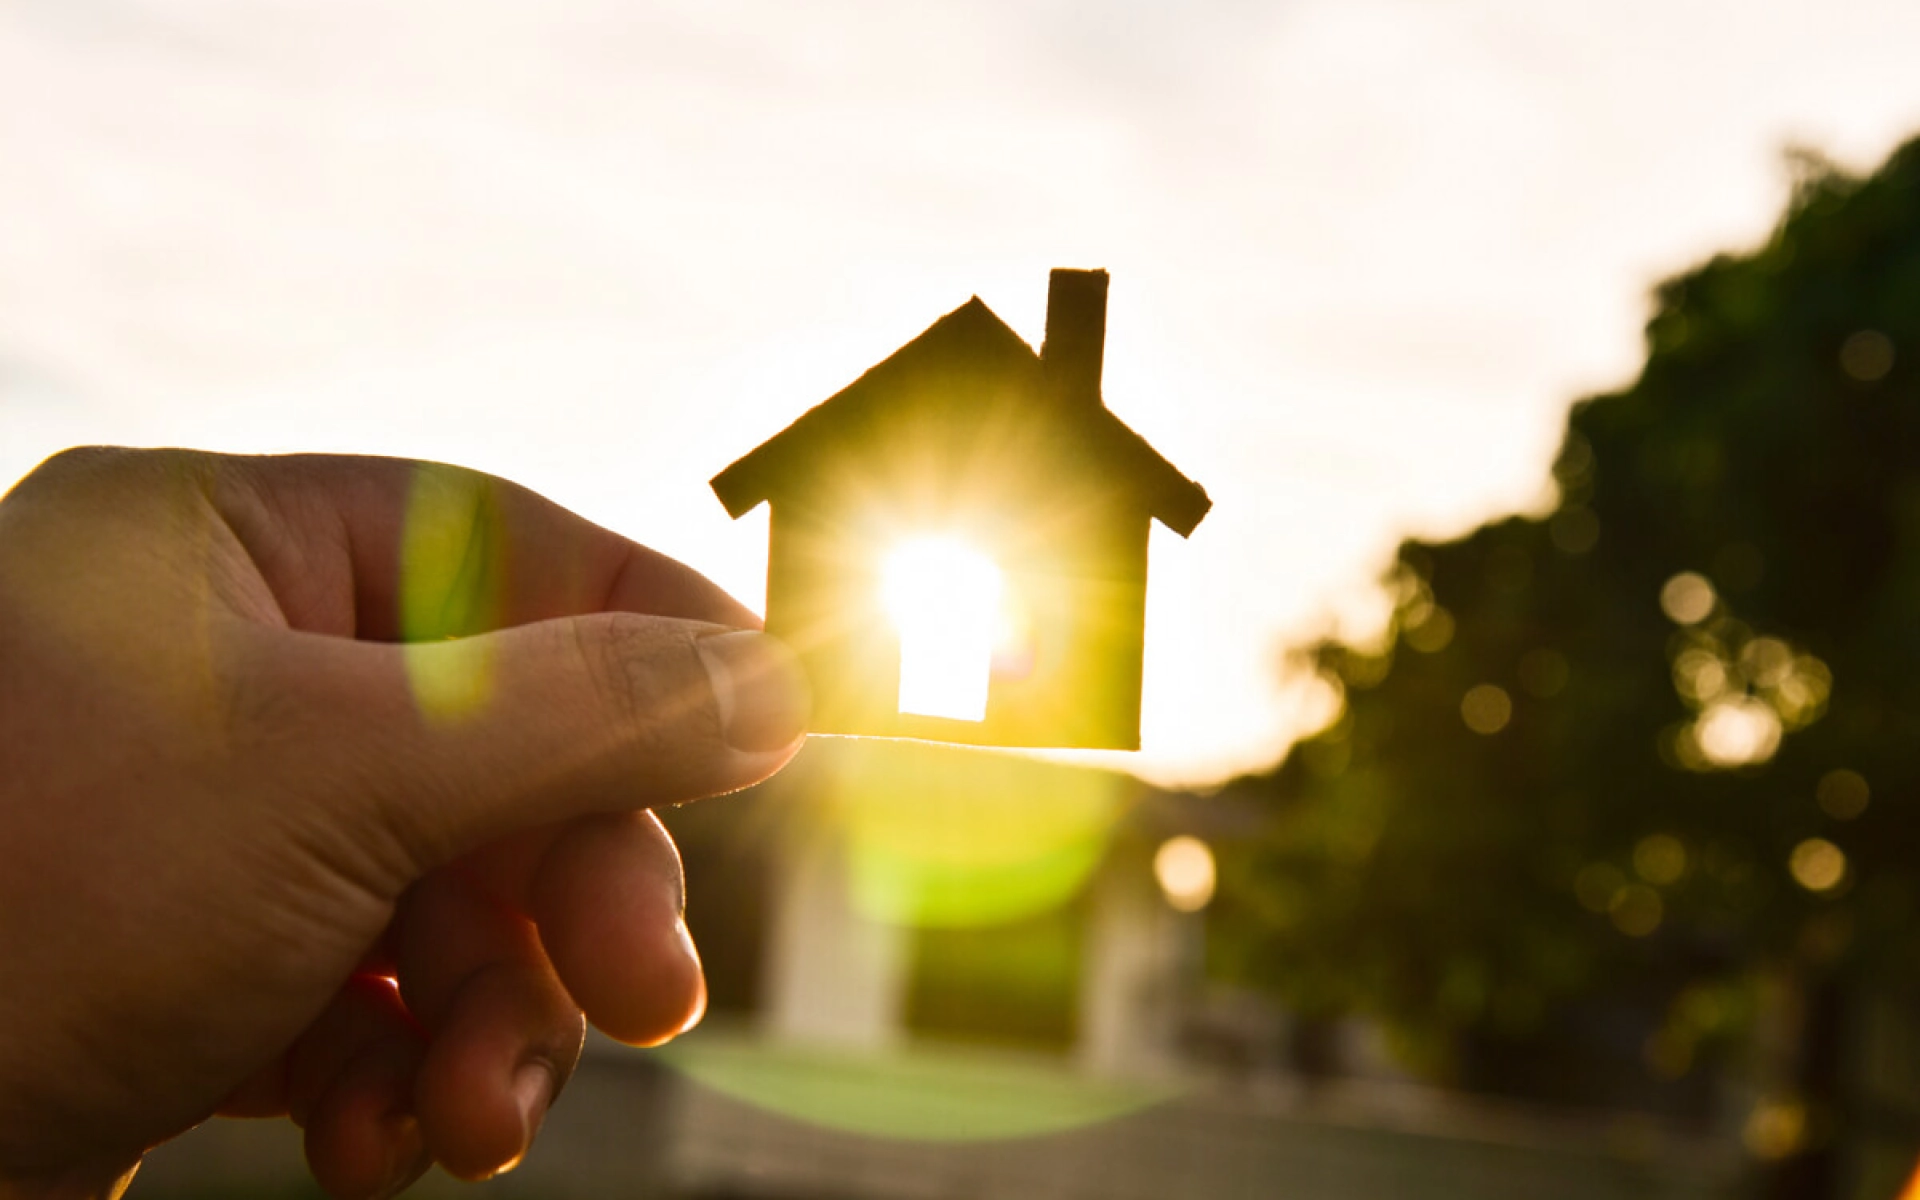 Eine Hand hält ein kleines Haus aus Holz gegen die Sonne und die Sonne scheint durch ein Fenster des kleinen Hauses. 